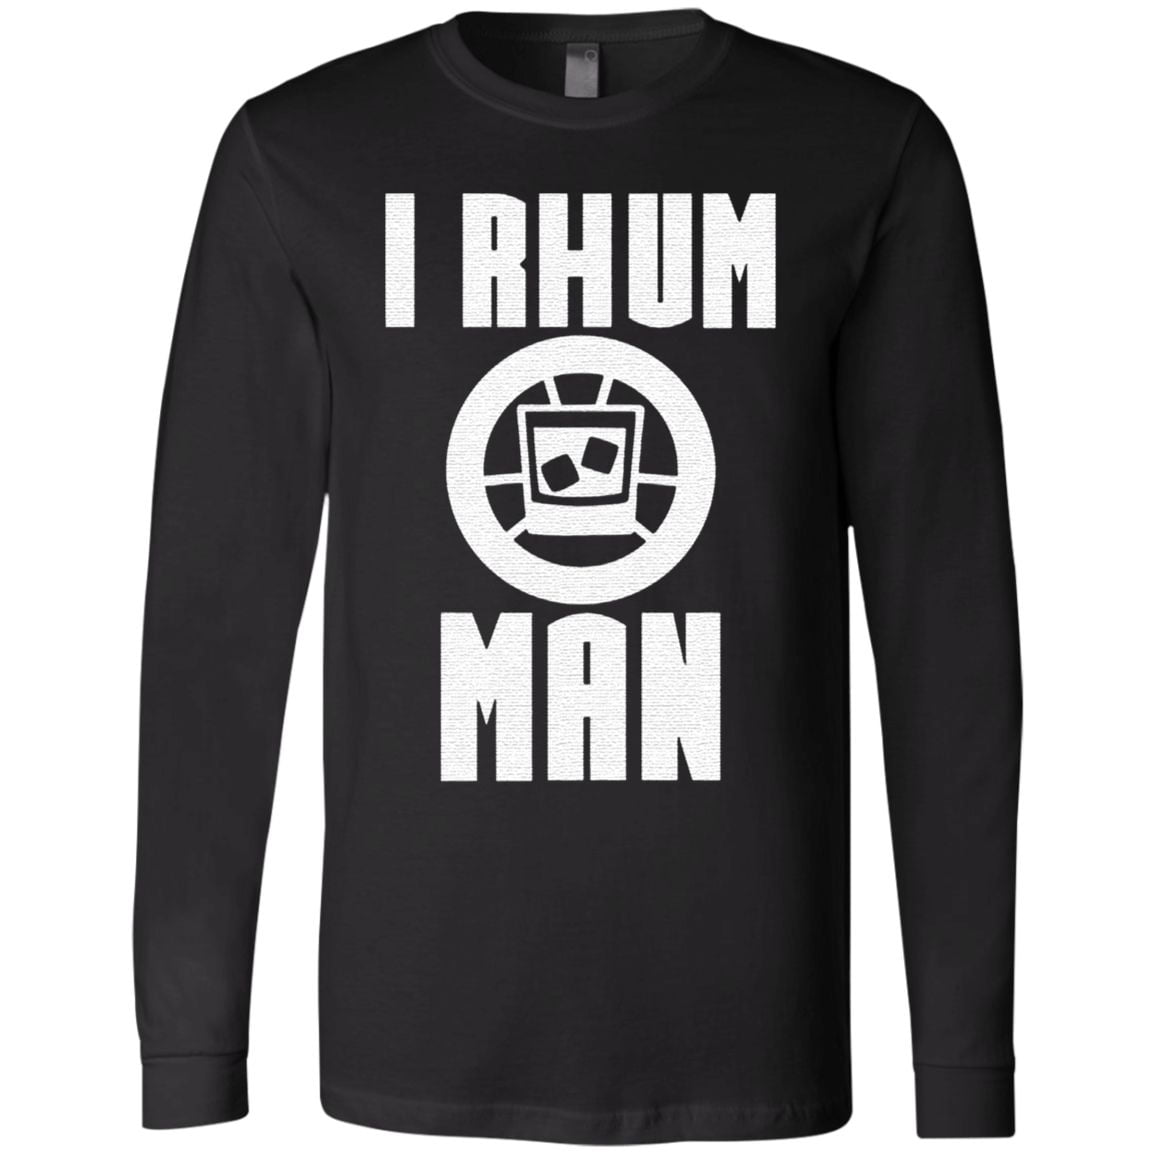 I Rhum Man T Shirt